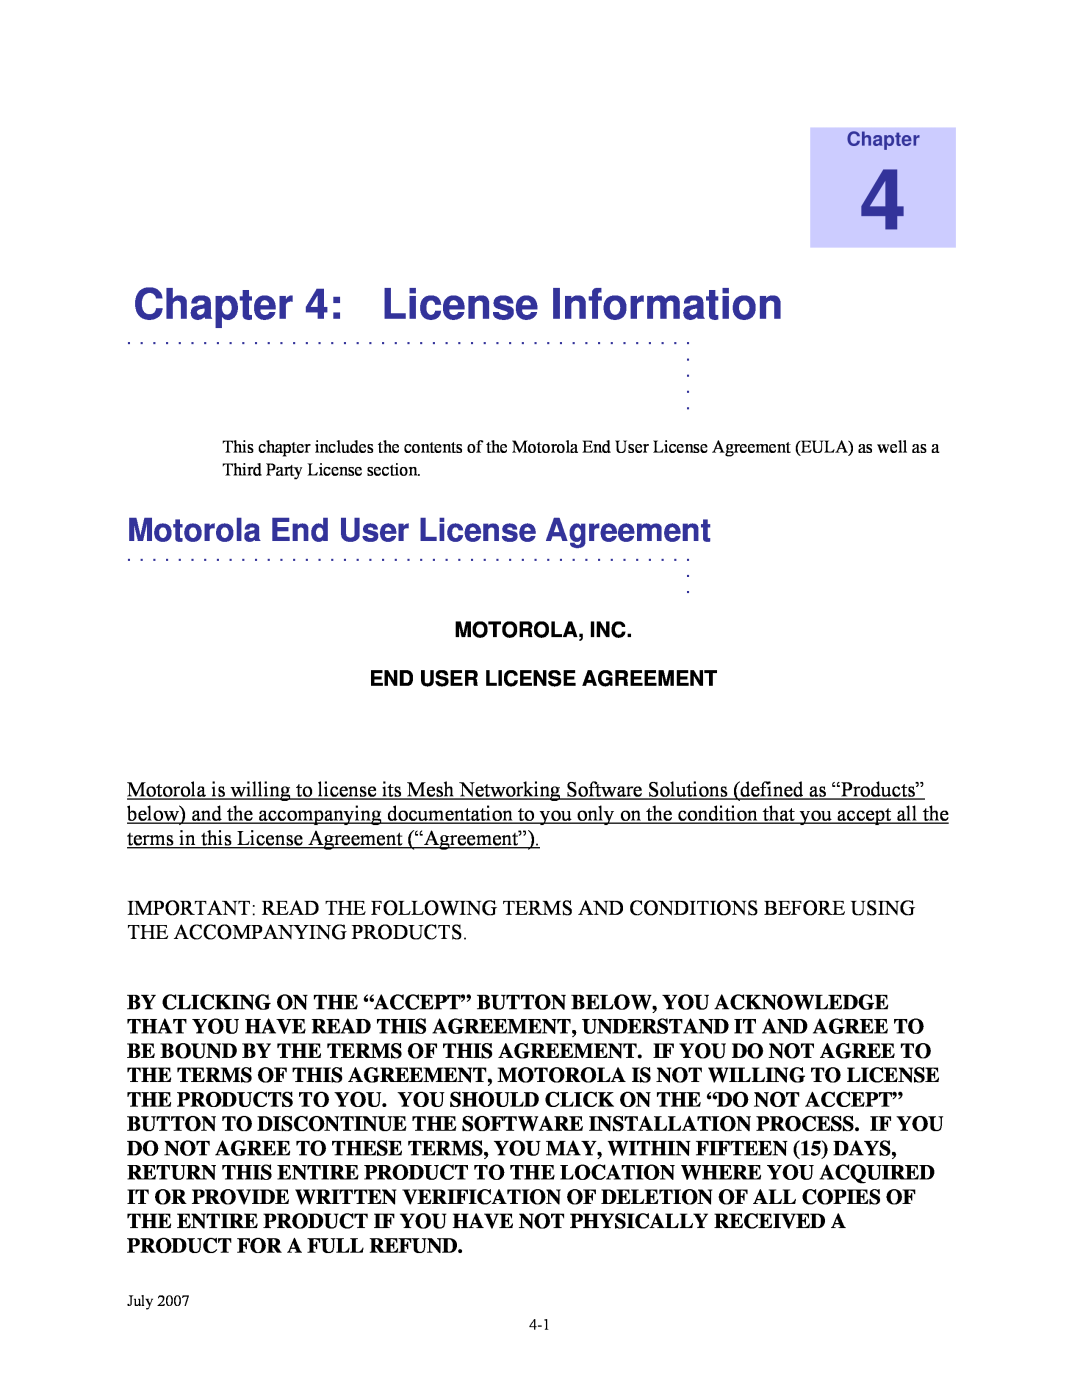 Nikon 4300 manual License Information, Motorola End User License Agreement, Motorola, Inc End User License Agreement 